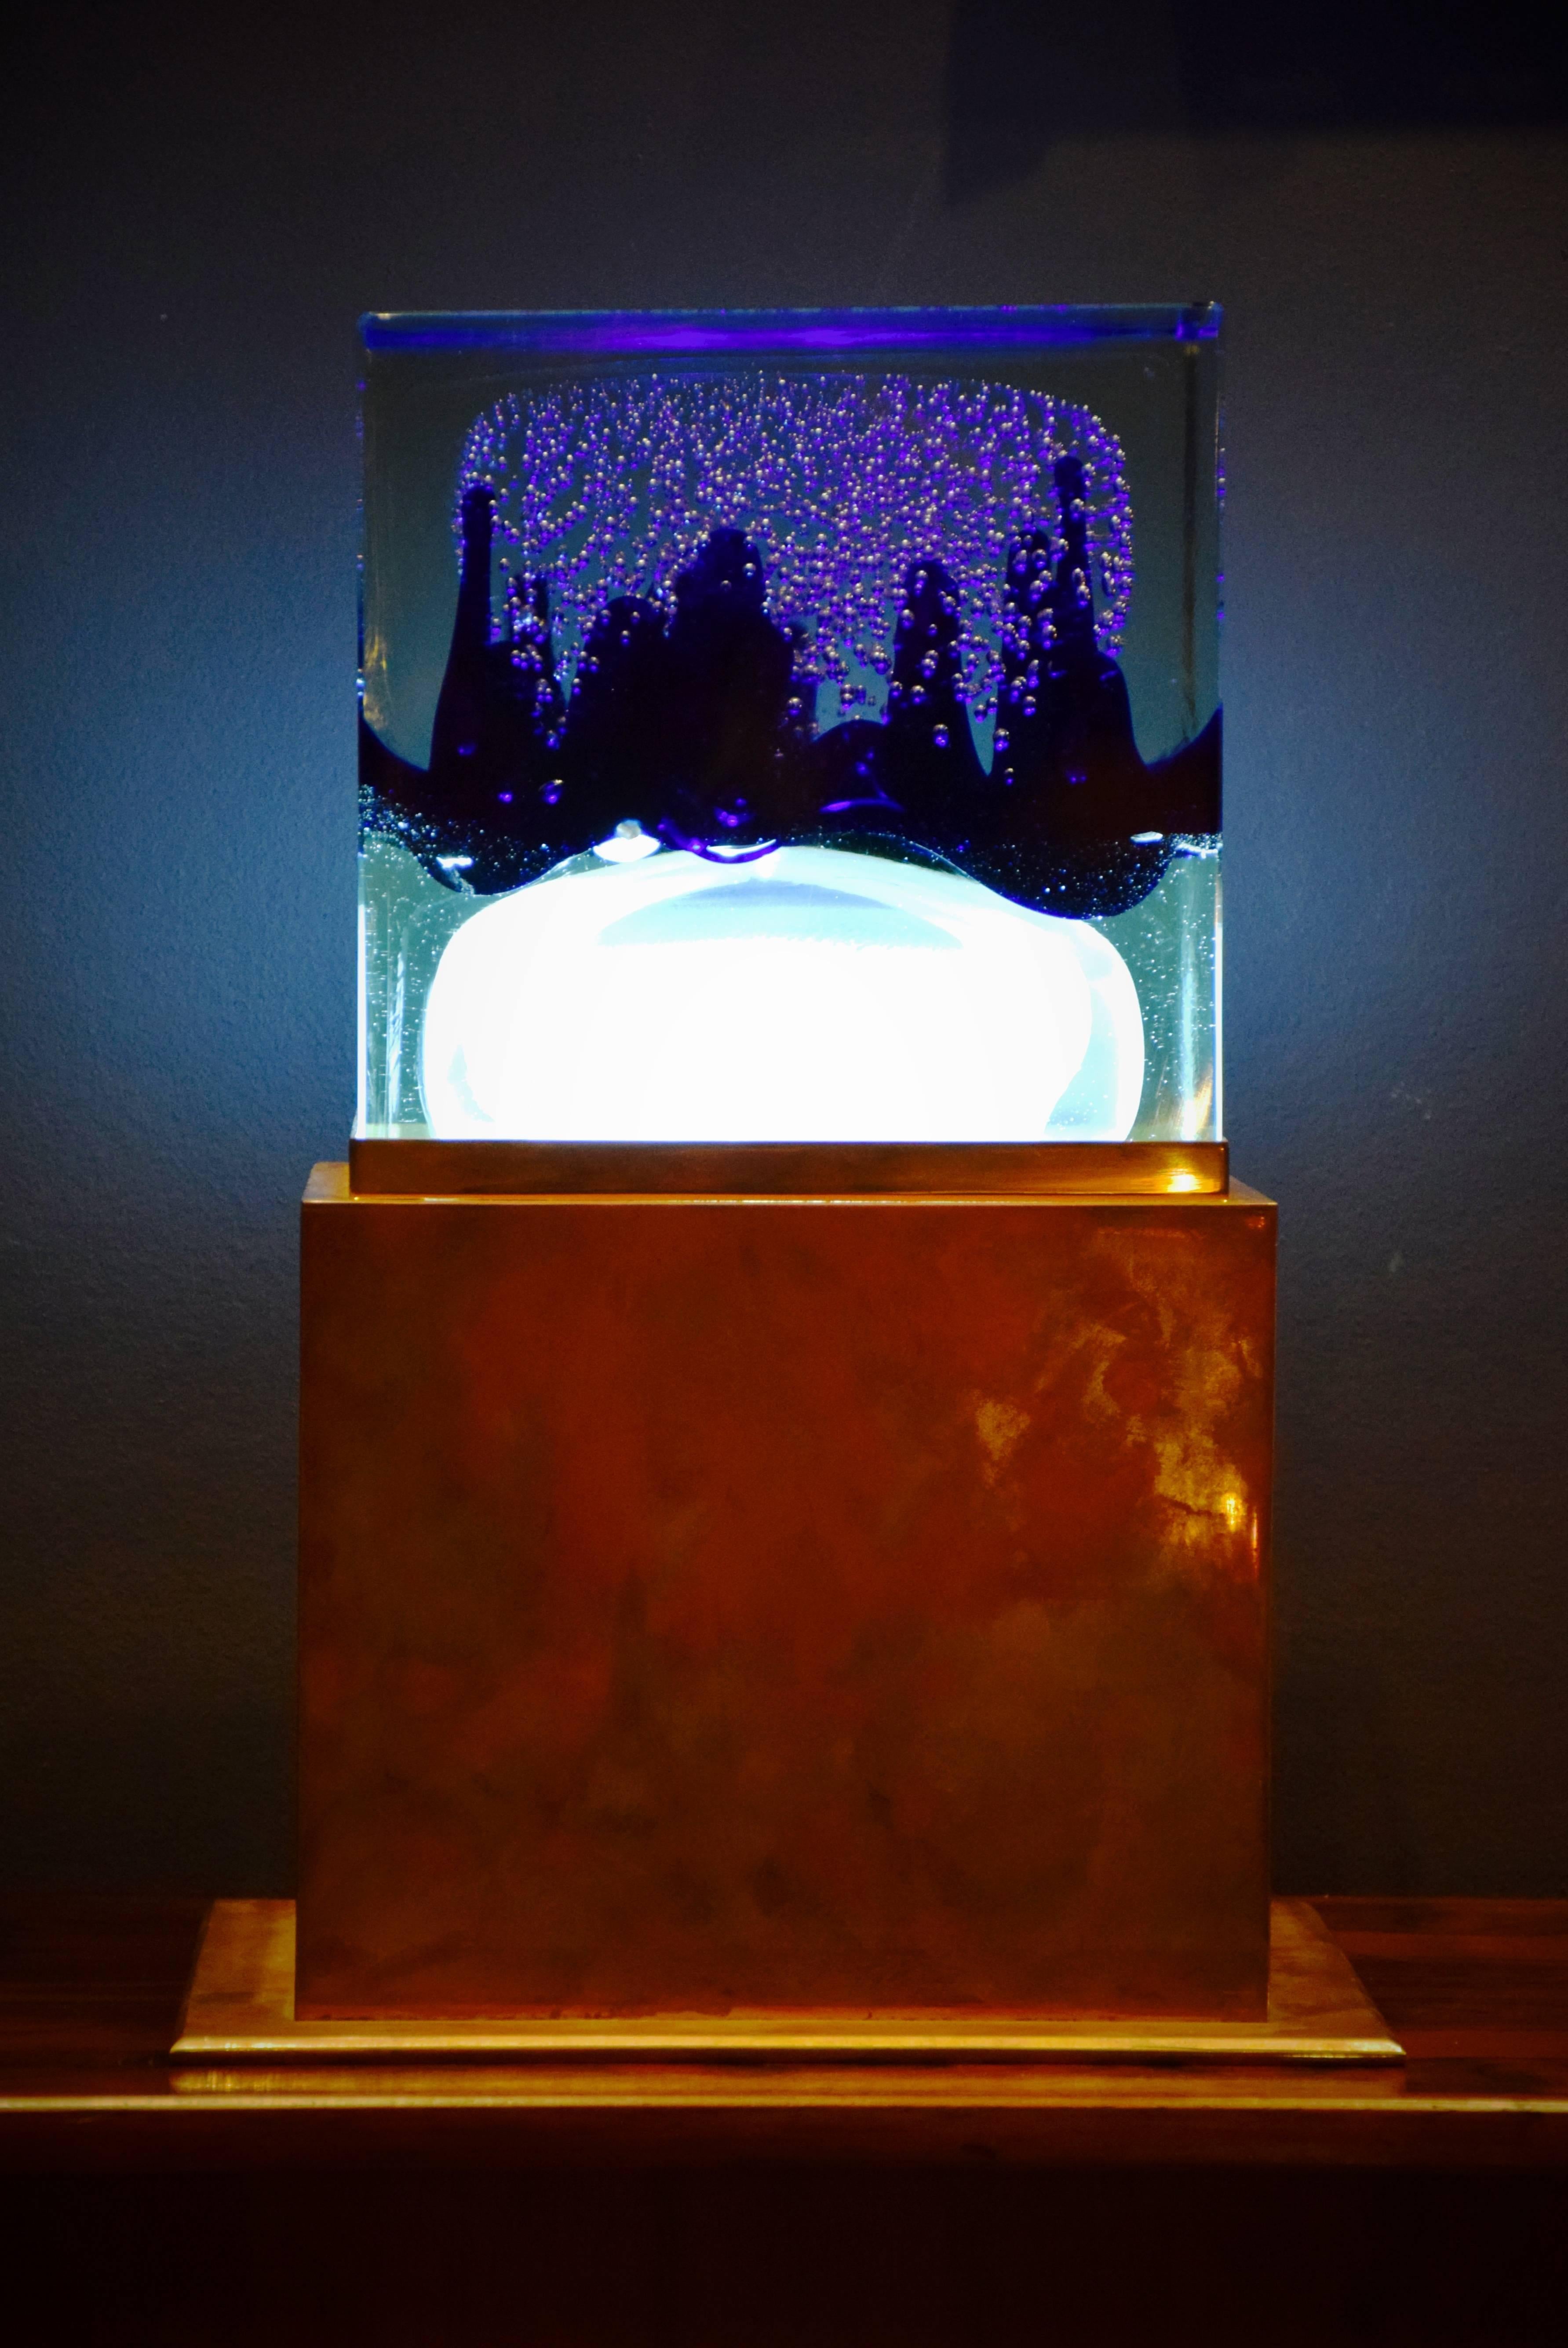 Schöne und einzigartige Tischlampe aus Murano-Glas und Kupfer.
Der massive Glaskubus ist mit Luftblasen, blauem Glas und weißem Glas in Form einer Qualle oder Wolke gefüllt. Unter dem Glaswürfel befindet sich ein Licht.
Der Sockel ist aus